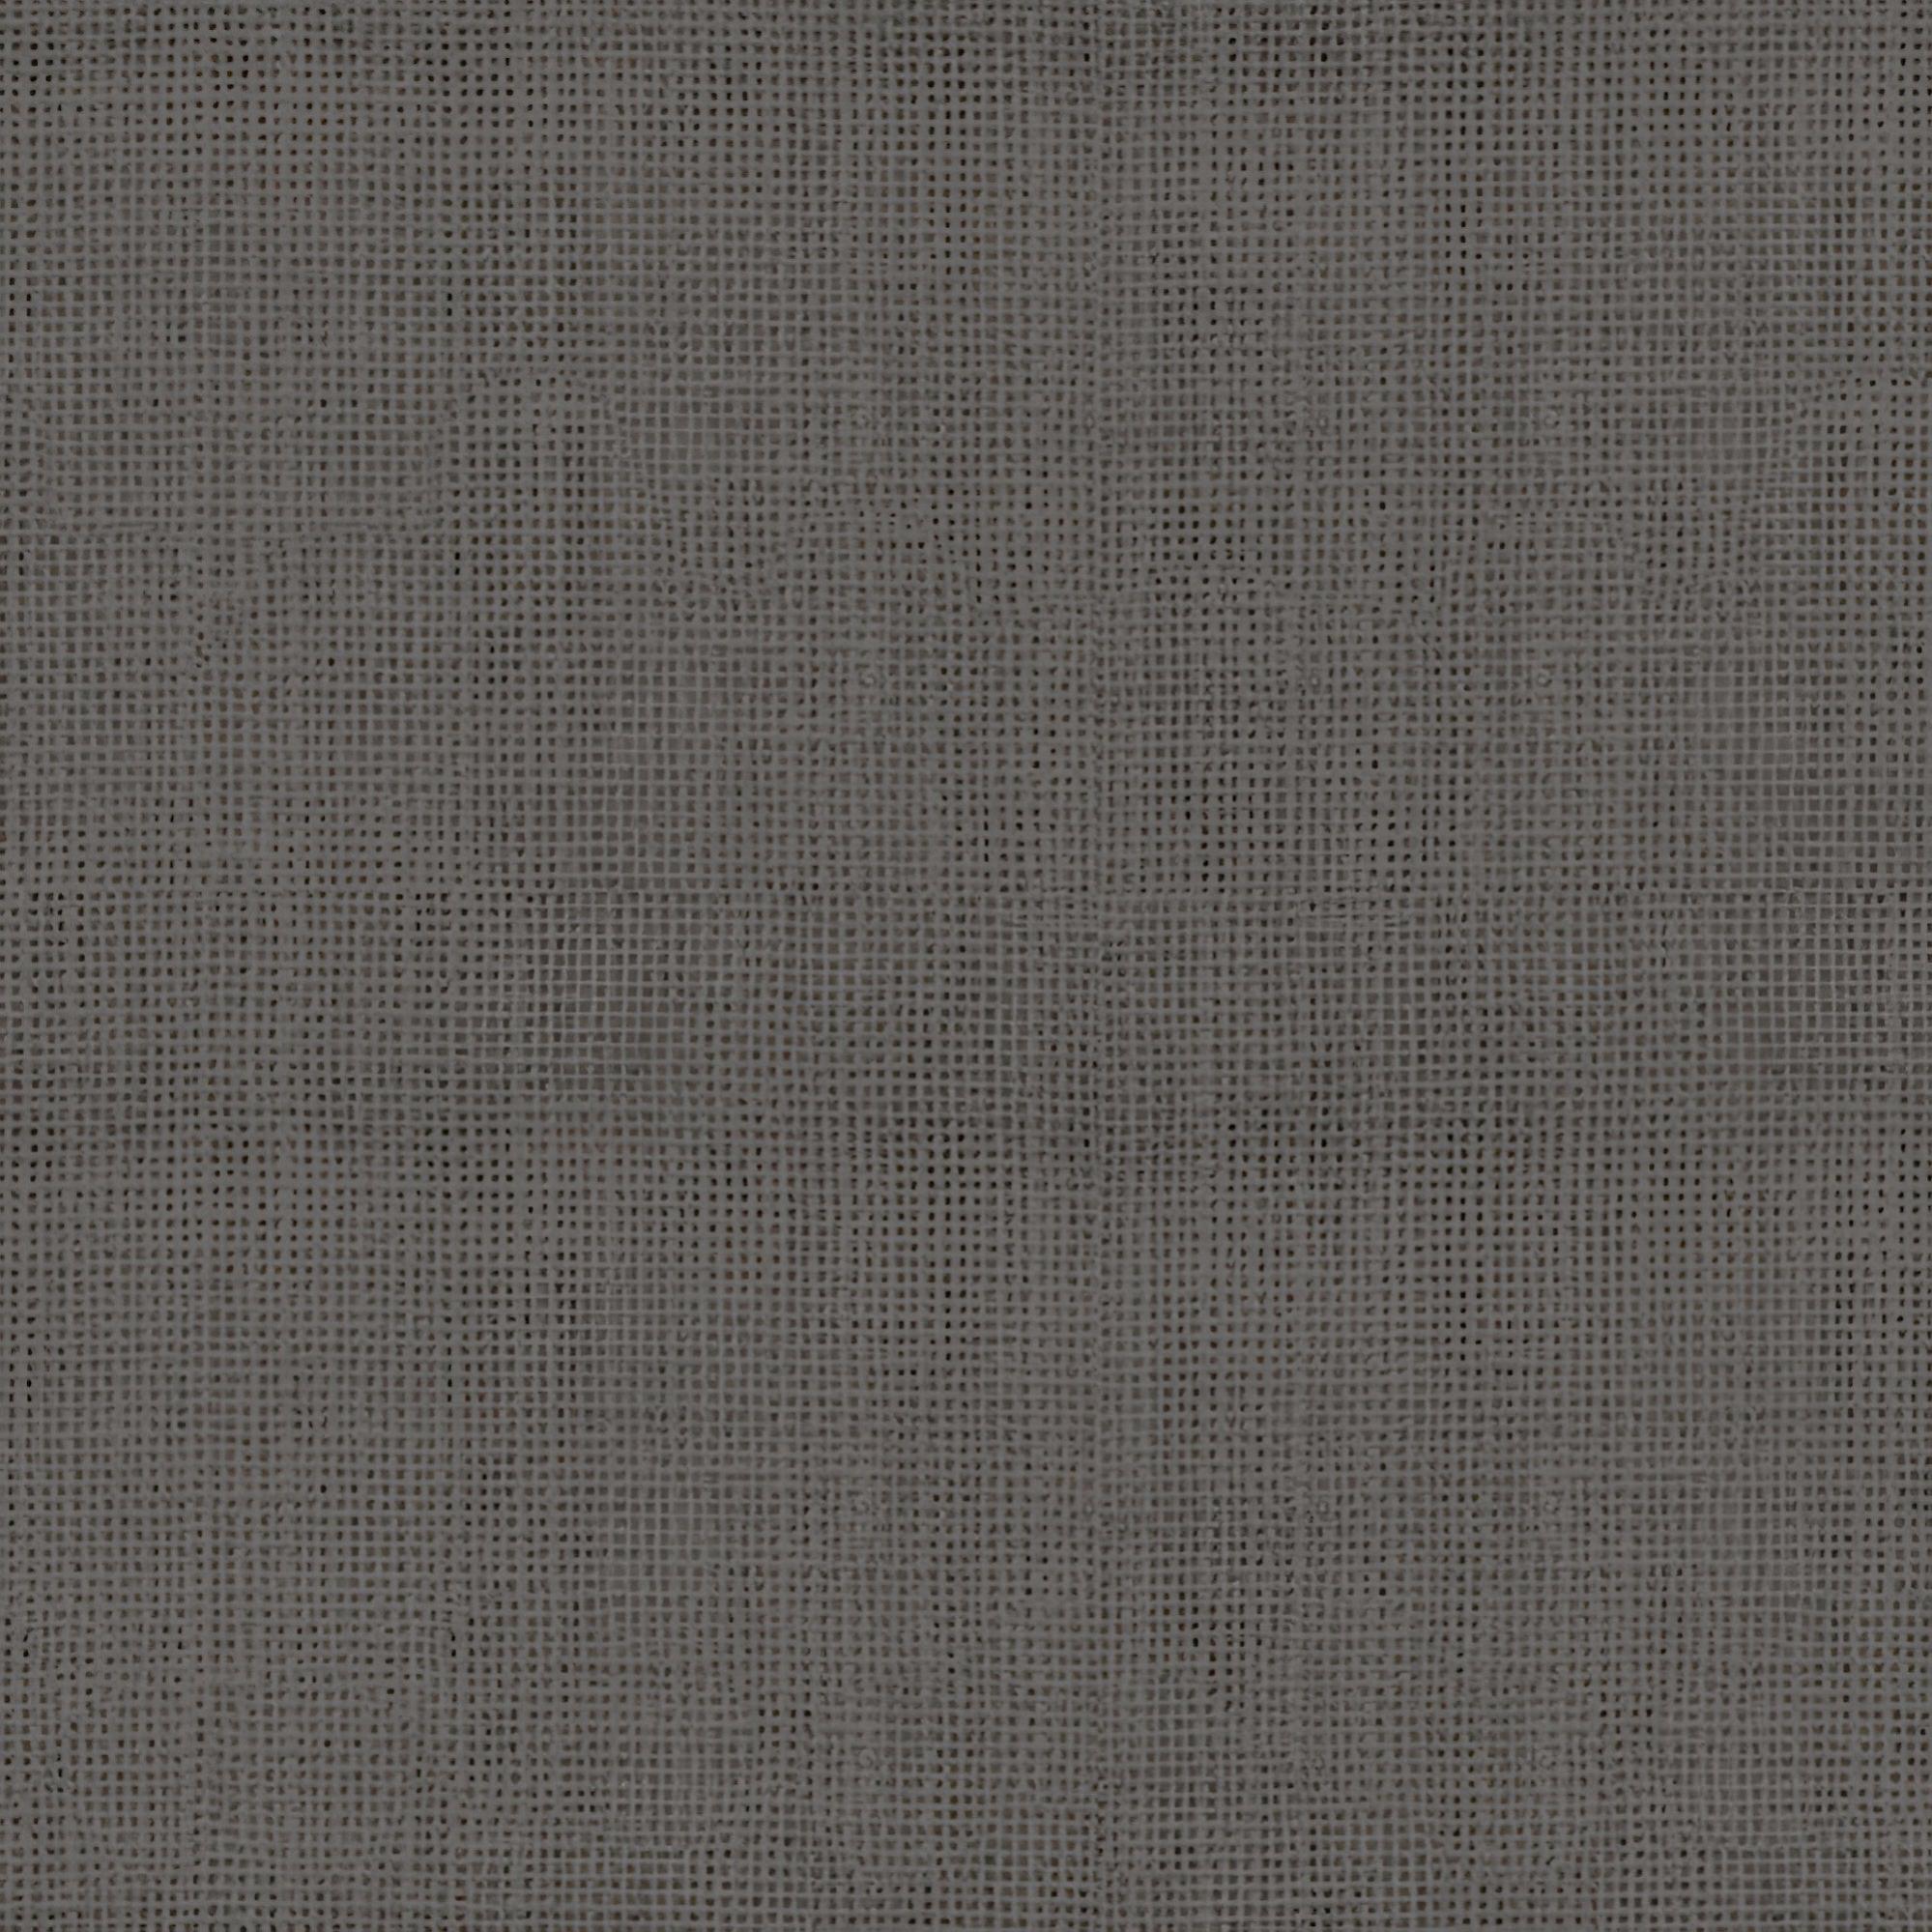 Visillo al corte lino smart berlin gris ancho 300 cm